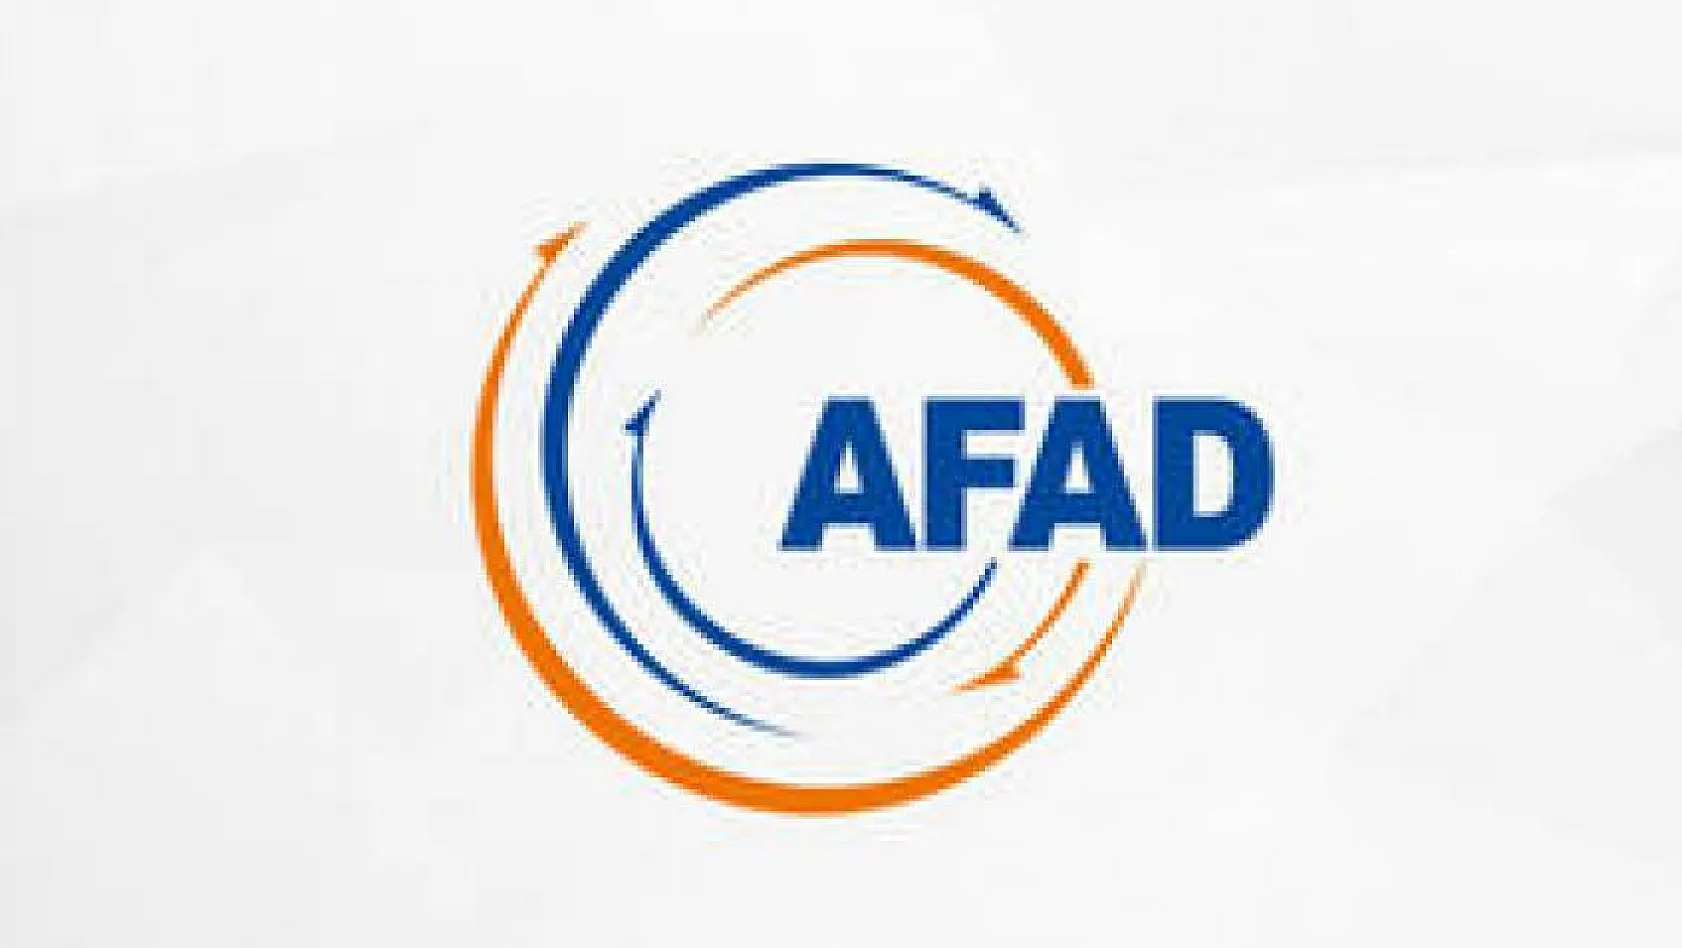 AFAD bağış yapmak isteyen vatandaşlar için hesap numaralarını yayınladı